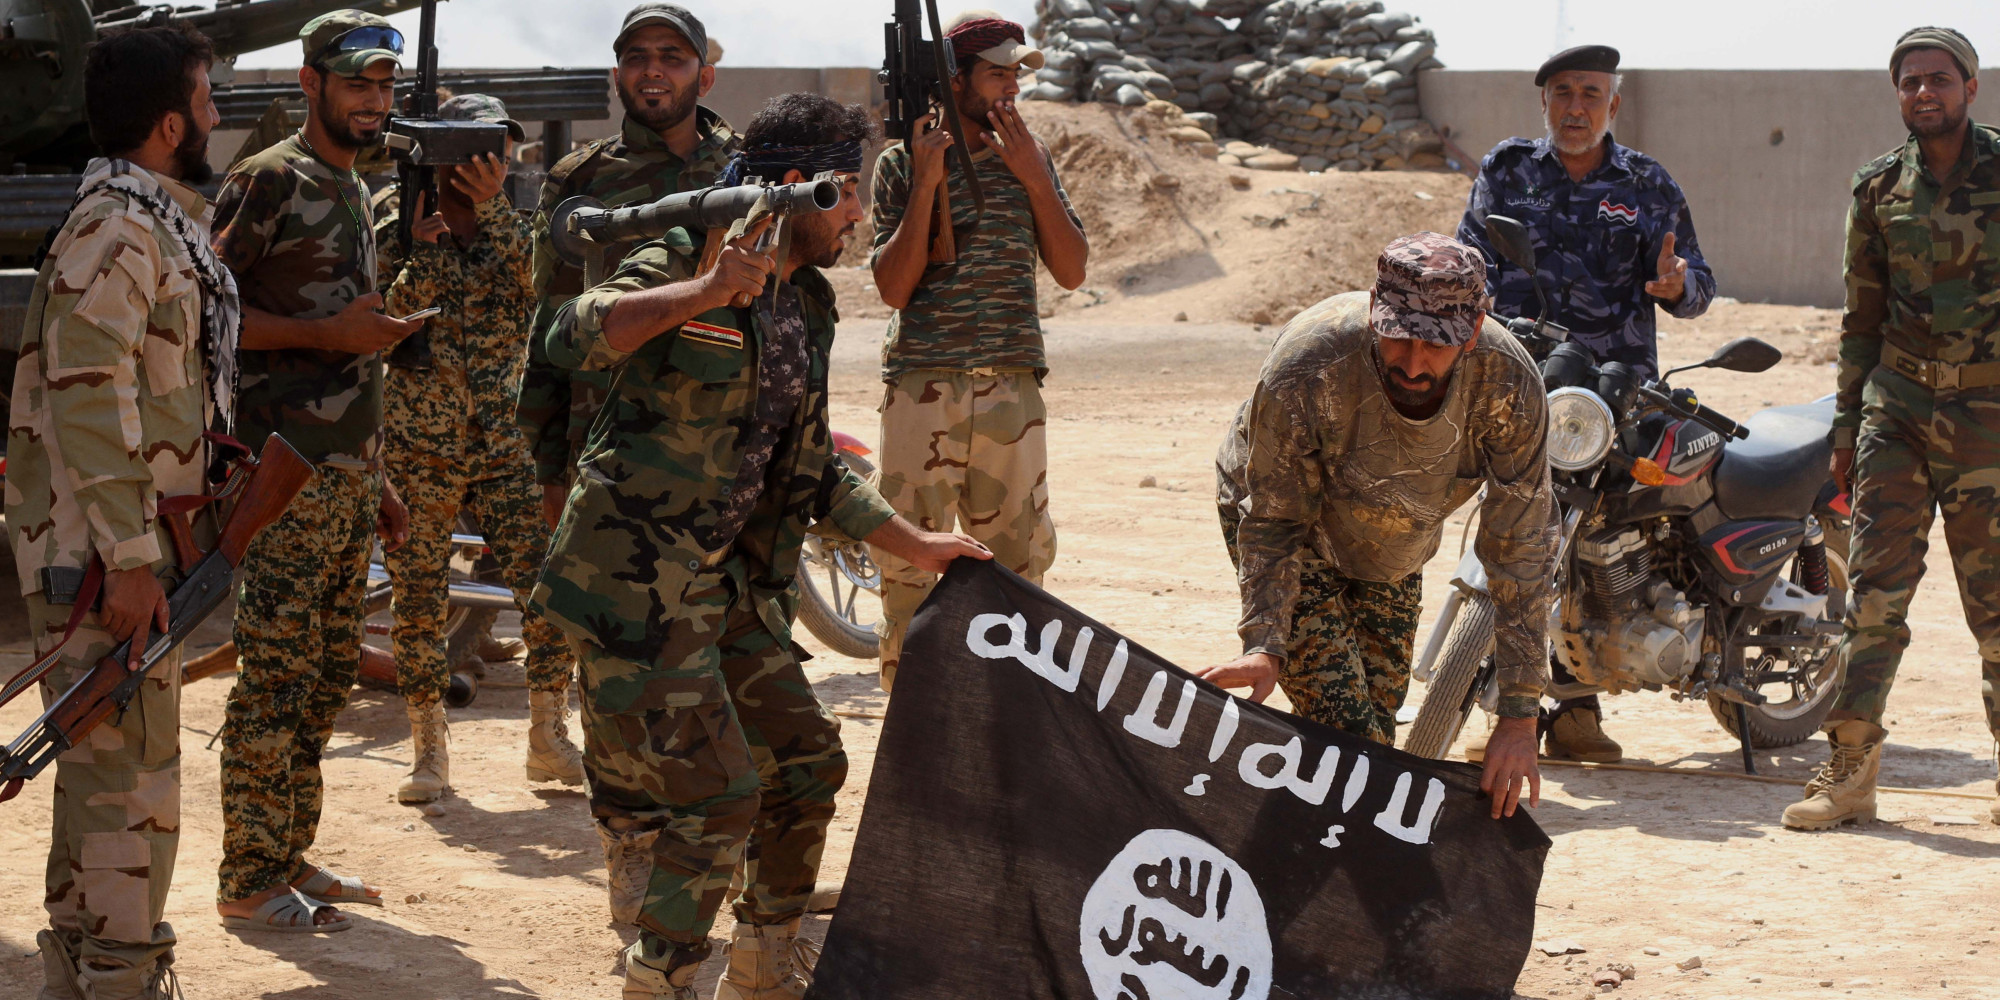 Фото игиловцев. Исламское государство Ирака и Сирии. Террористическая группировка «Исламское государство» в Сирии. Исламистская группировка Вилаят Синай.